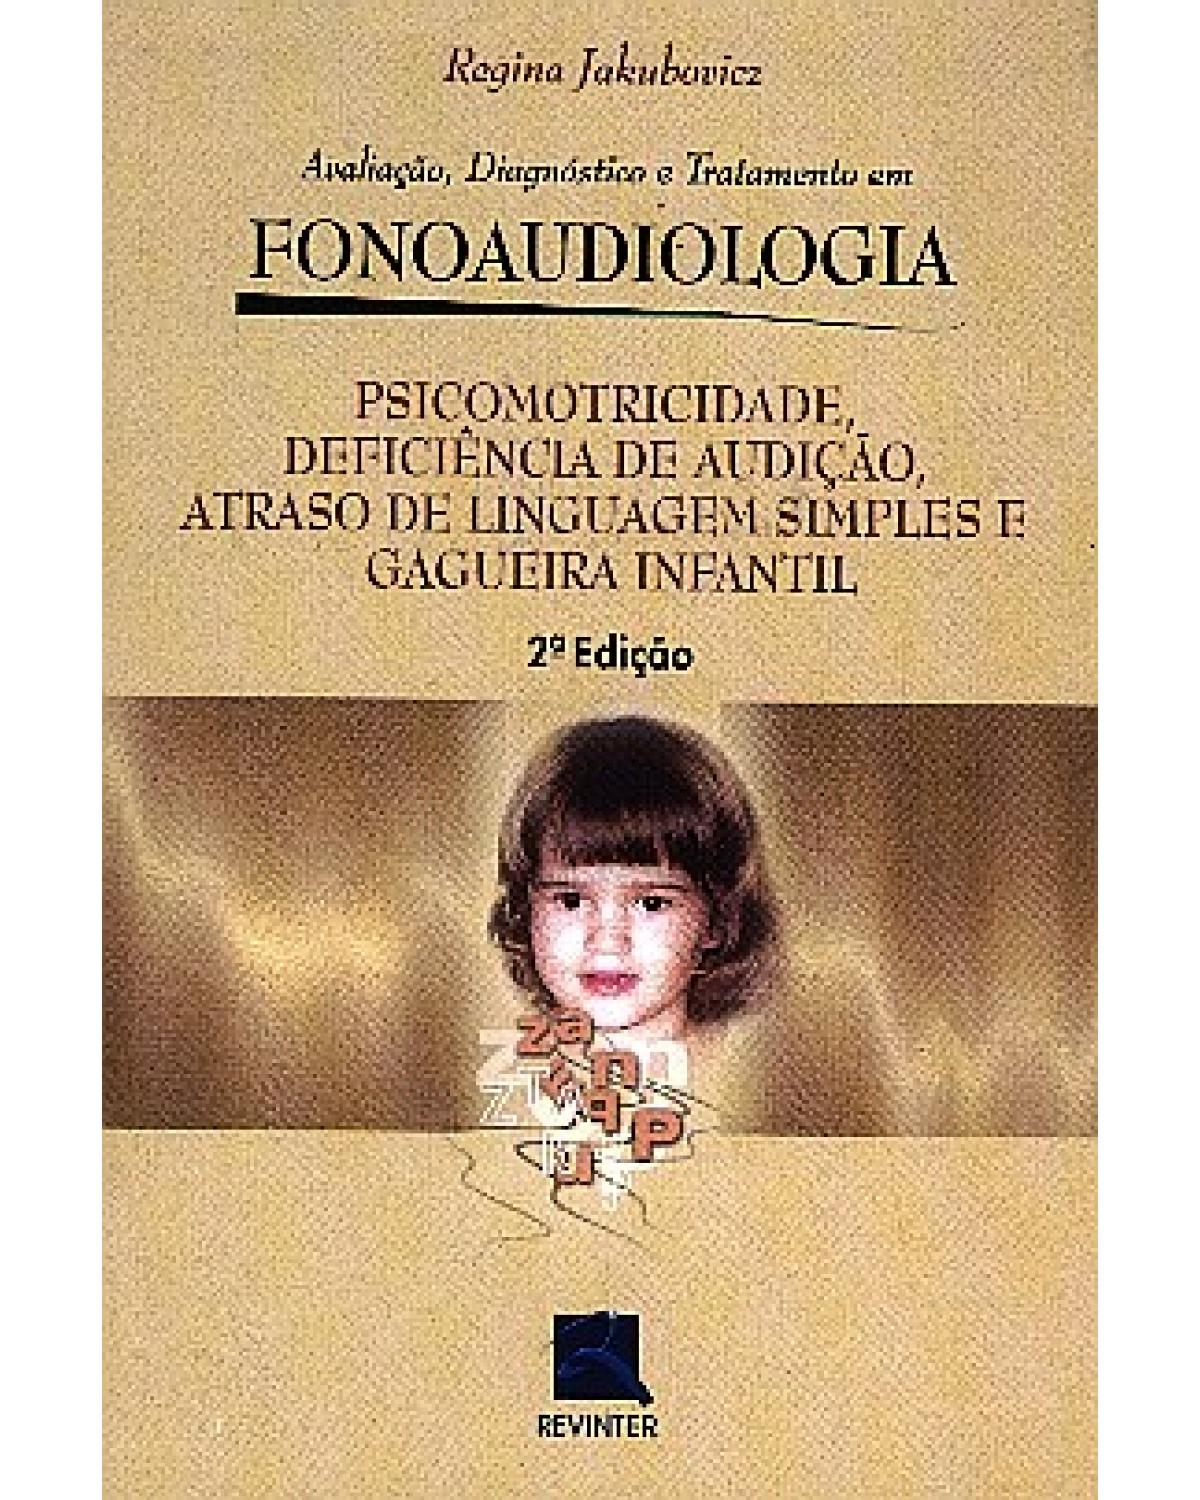 Psicomotricidade, deficiência de audição, atraso de linguagem simples e gagueira infantil - avaliação, diagnóstico e tratamento em fonoaudiologia - 2ª Edição | 2002